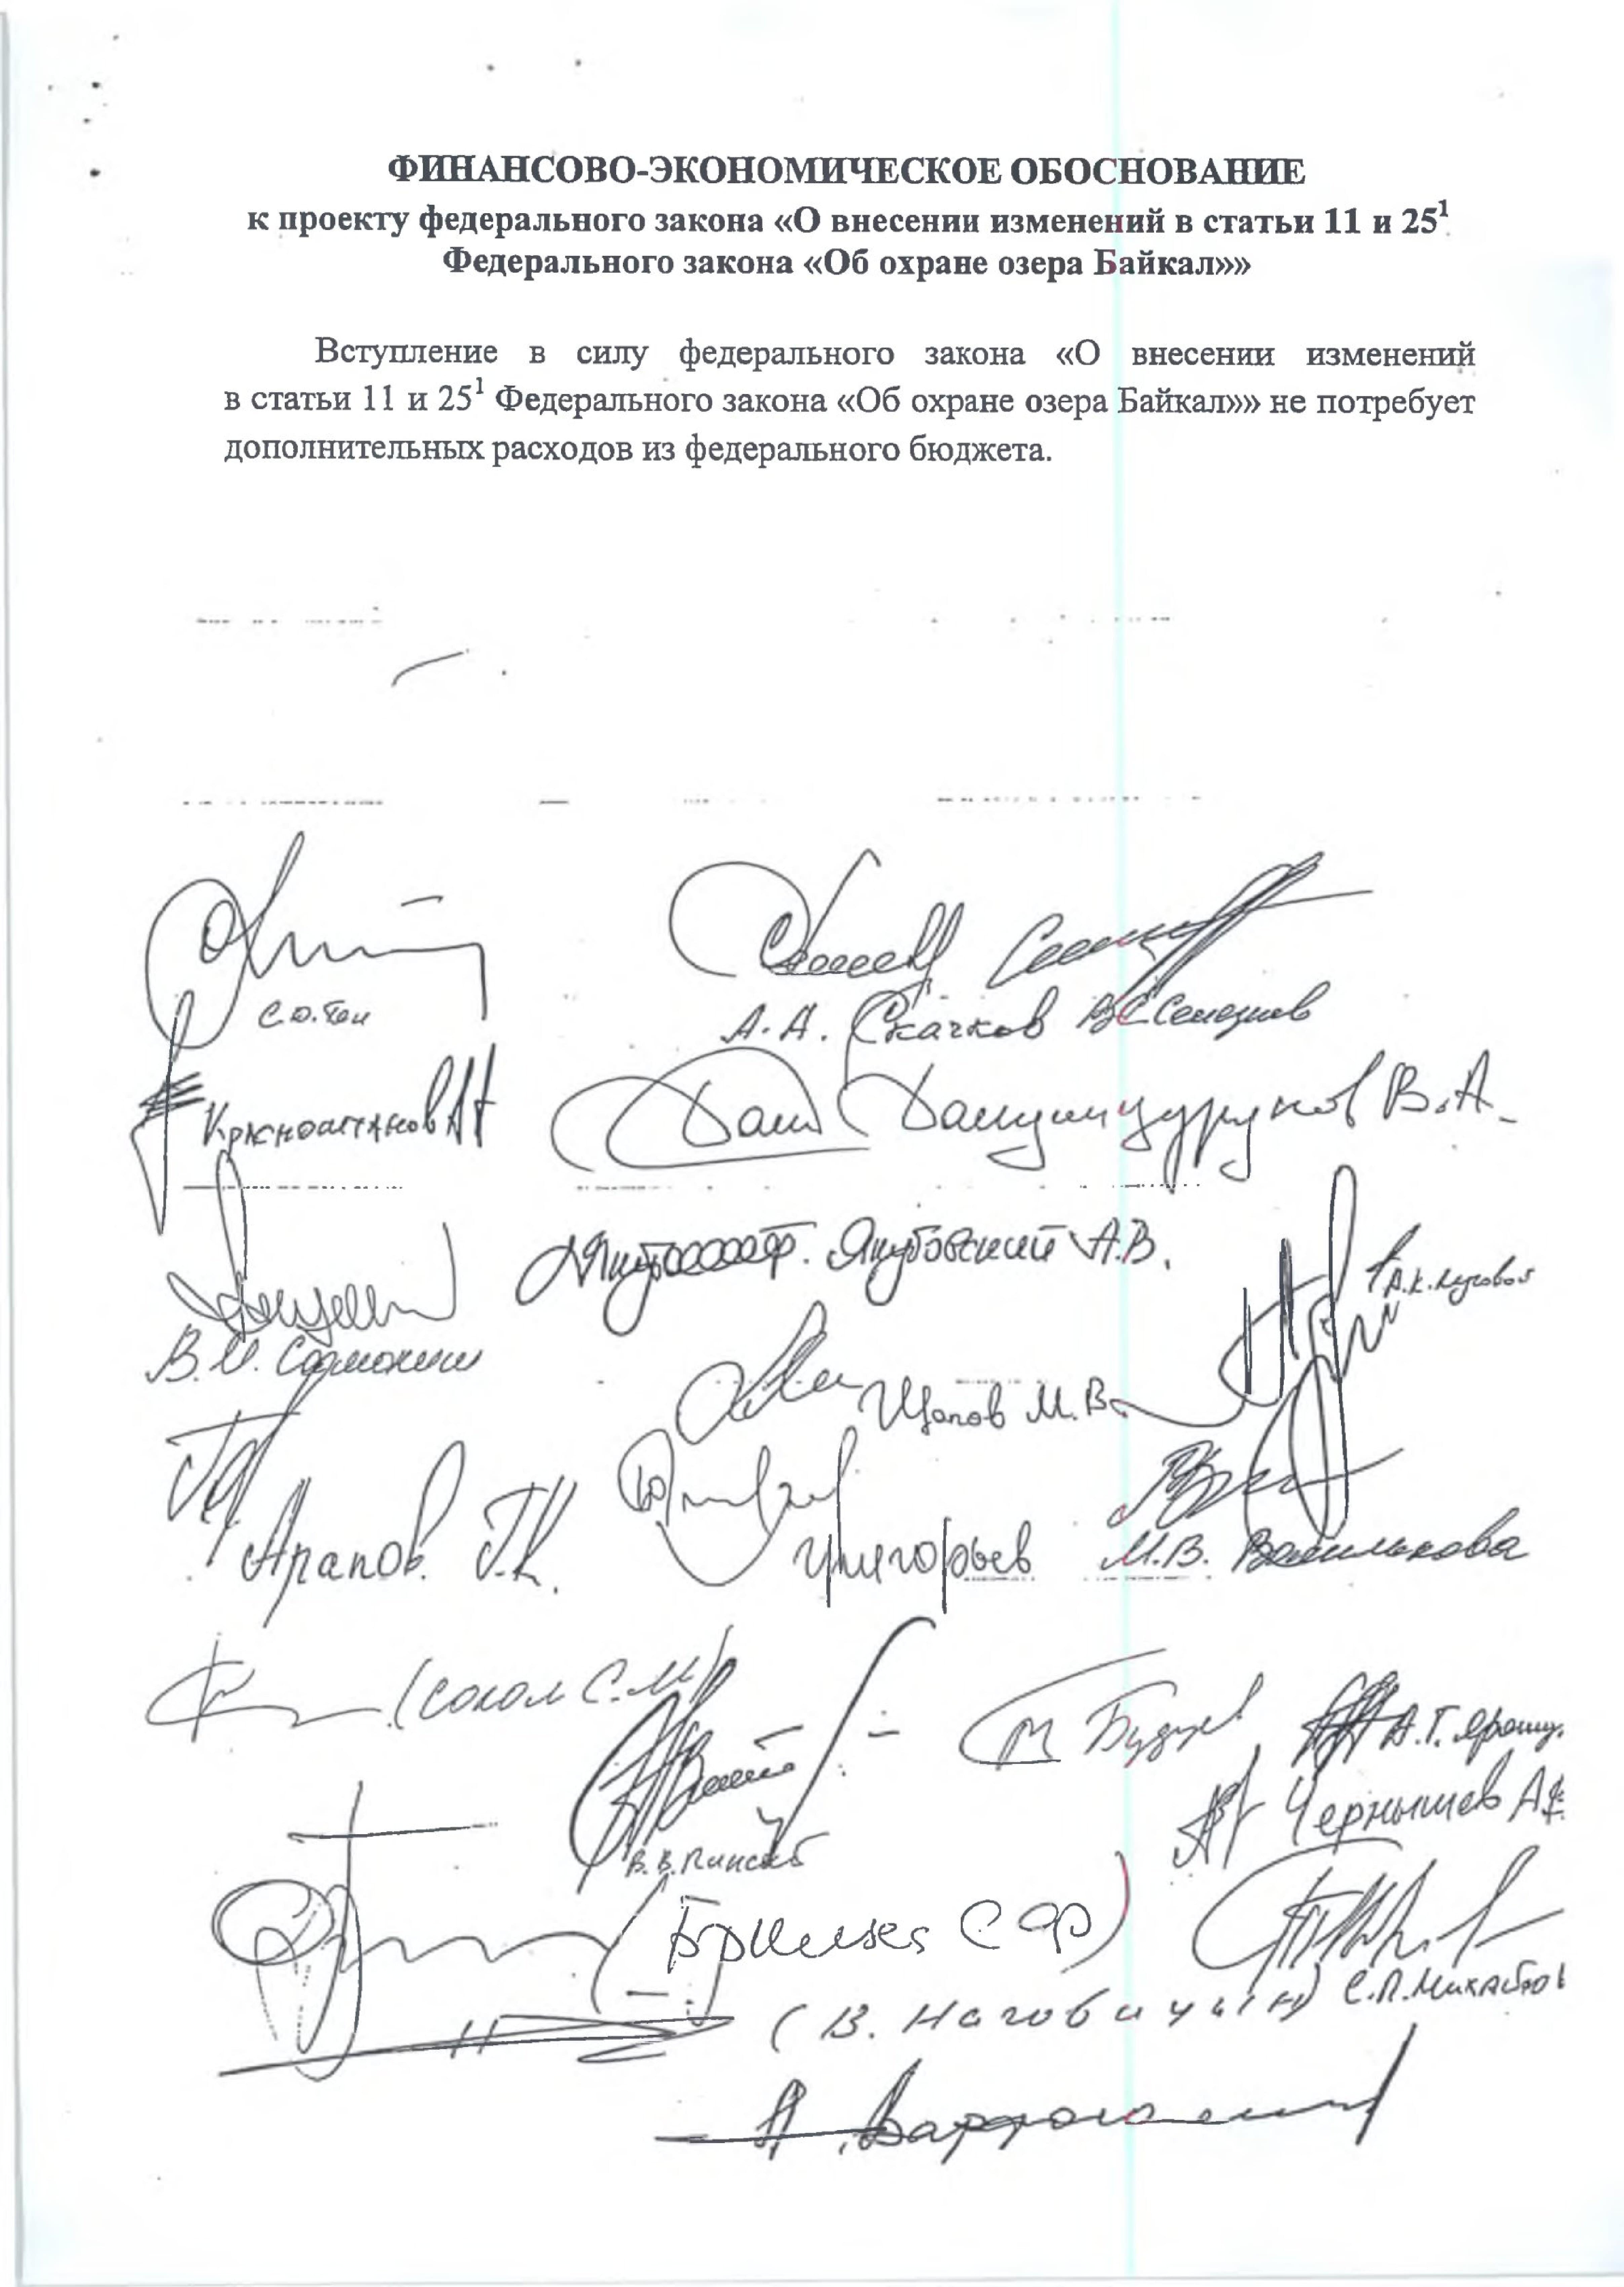 В редакцию поступили новые предложения к документам по охране озера Байкал - фото 17